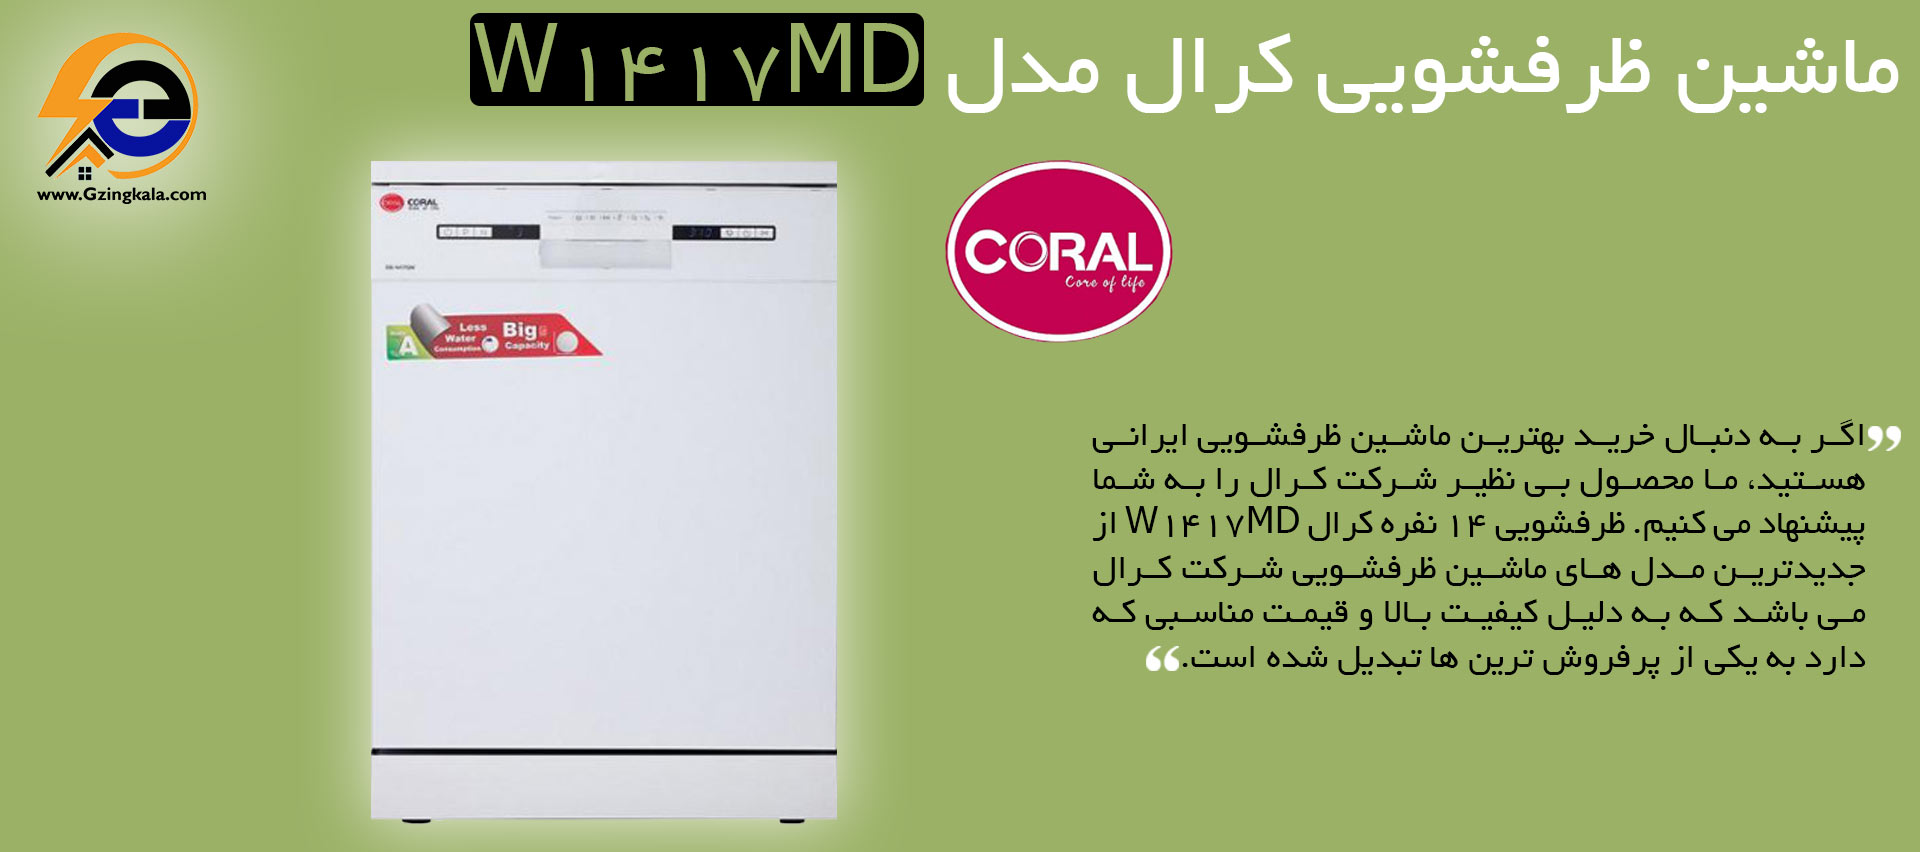 ماشین ظرفشویی کرال مدل W1417MD